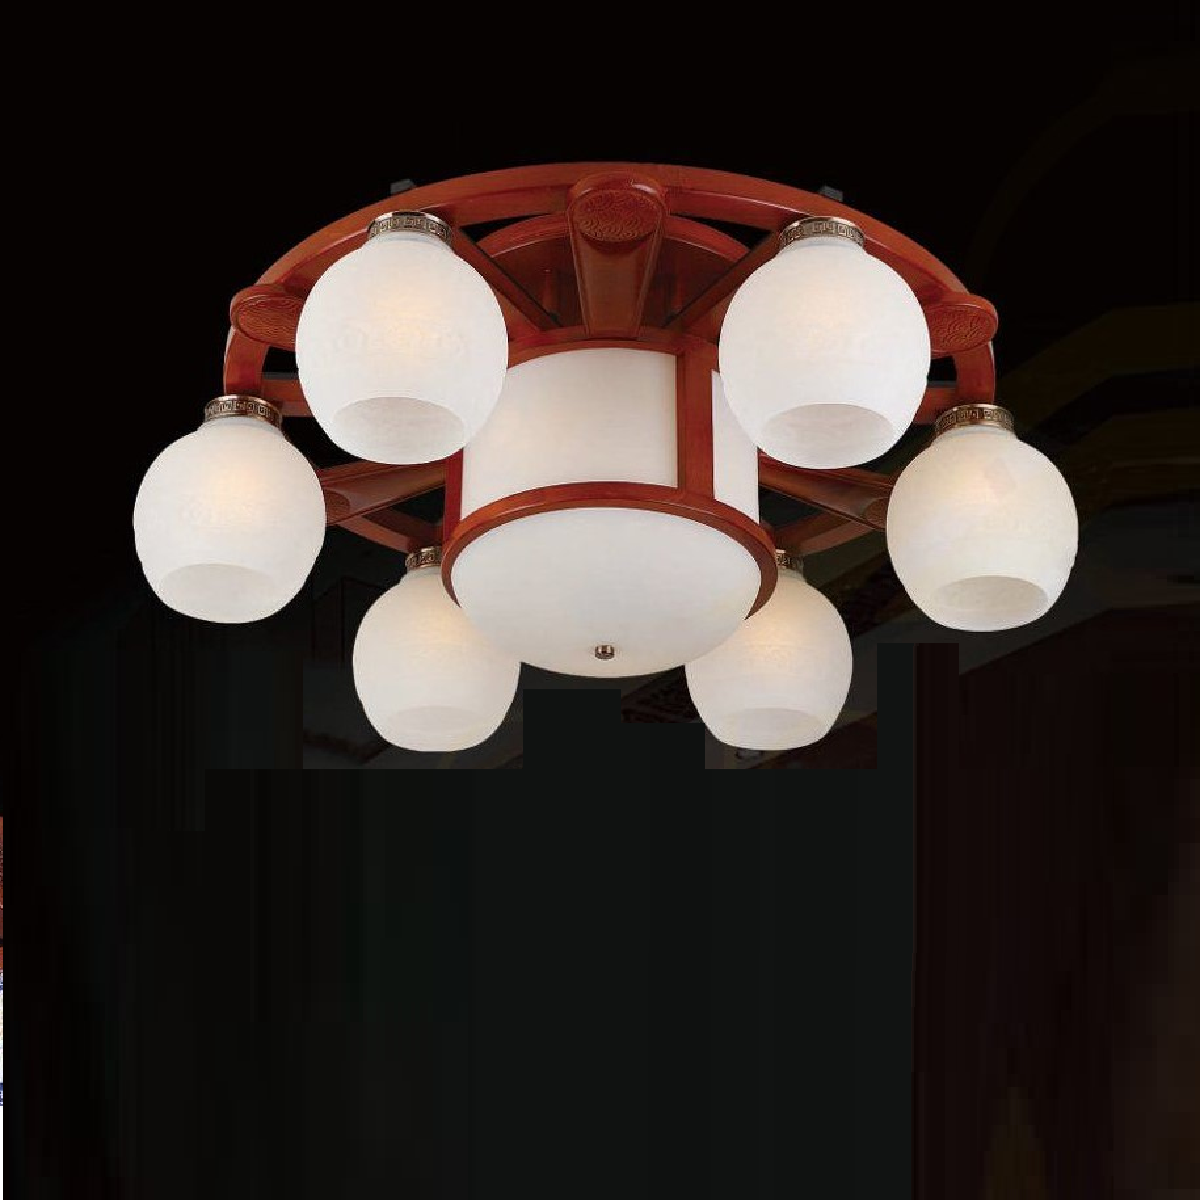 CODE: 86760 - 6+1: Đèn chùm gắn sát trần 7 tay chao thủy tinh - KT: Ø800mm - Bóng đèn E27